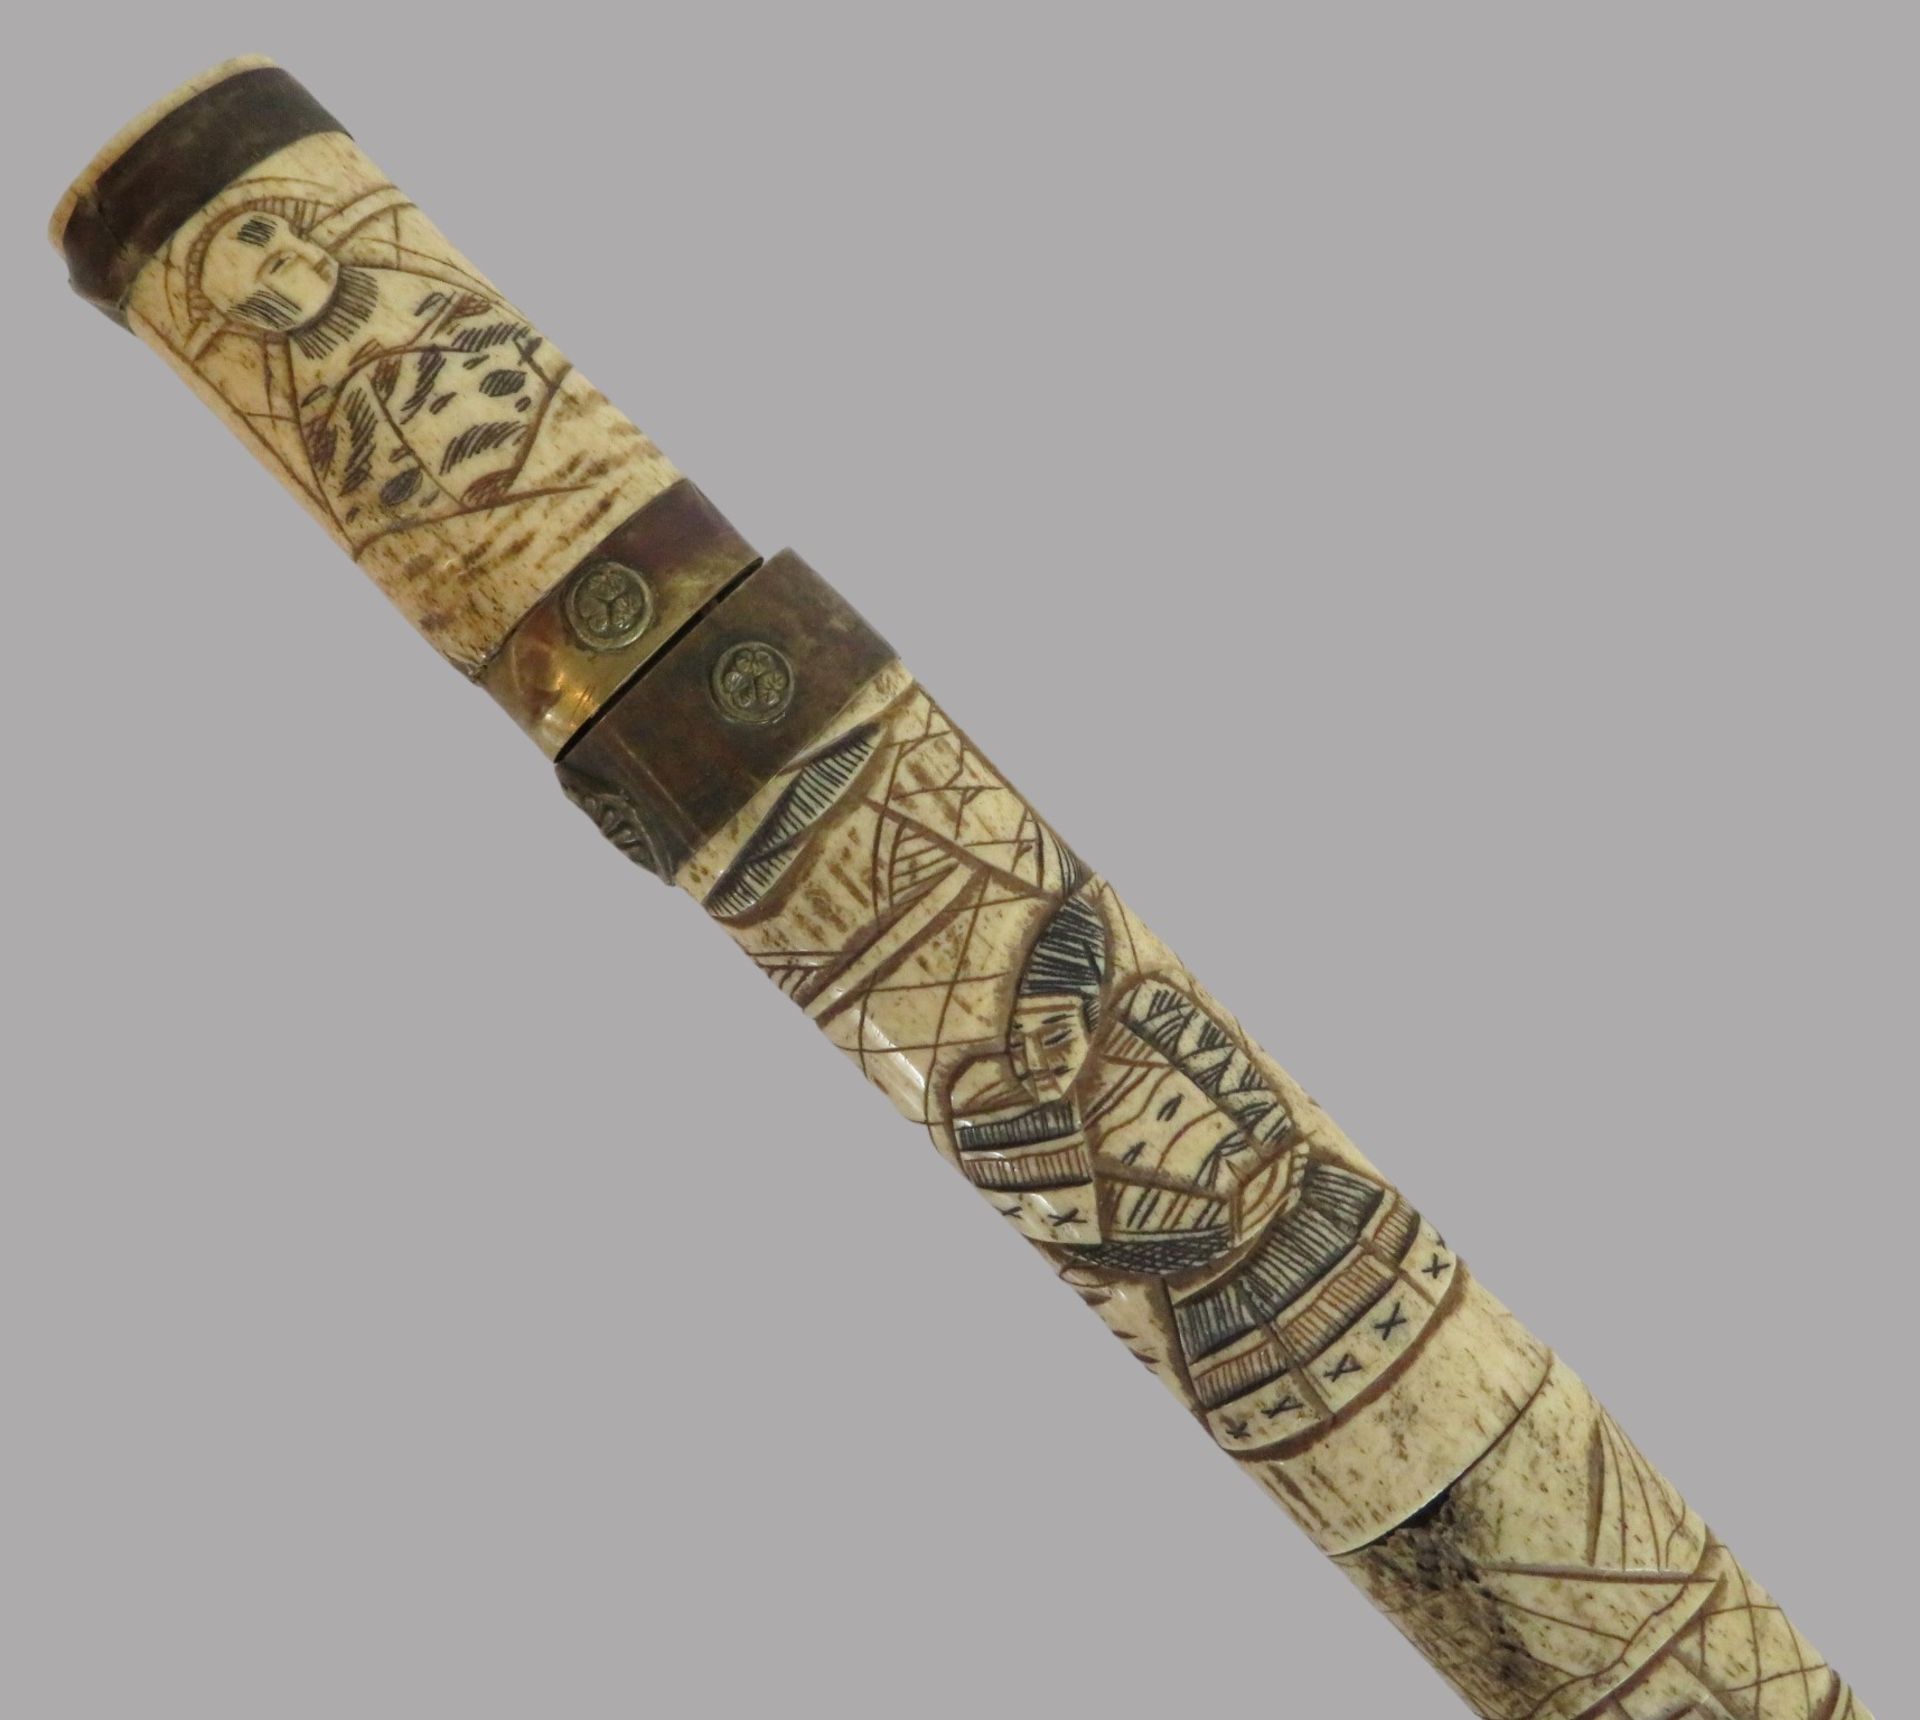 Samurai-Schwert in Scheide, 19. Jahrhundert, Bein geschnitzt, l 70 cm, b 4 cm. - Image 2 of 4